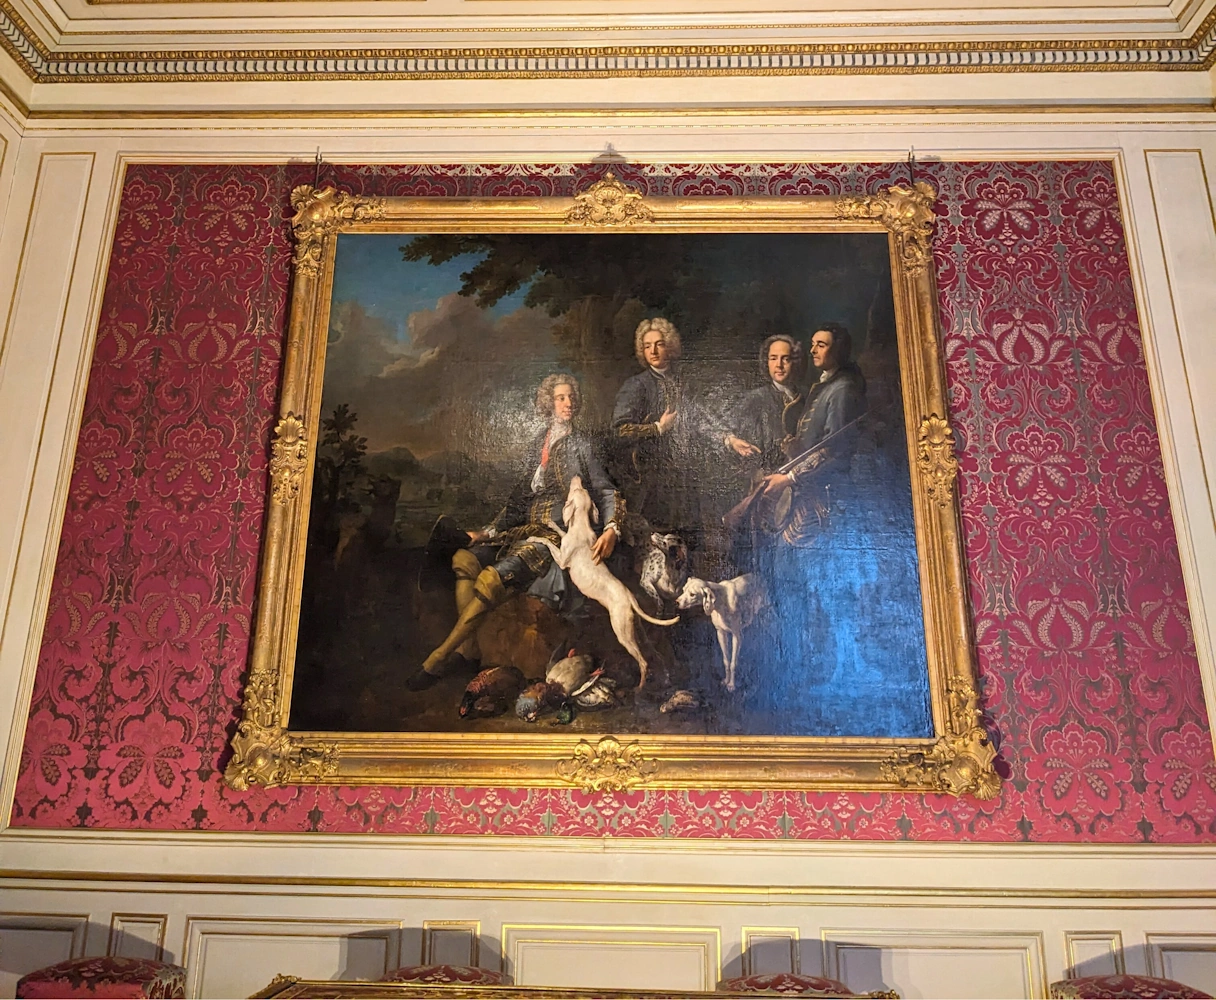 Gemälde im Schloss Nymphenburg. Zu sehen ist eine königliche Familie